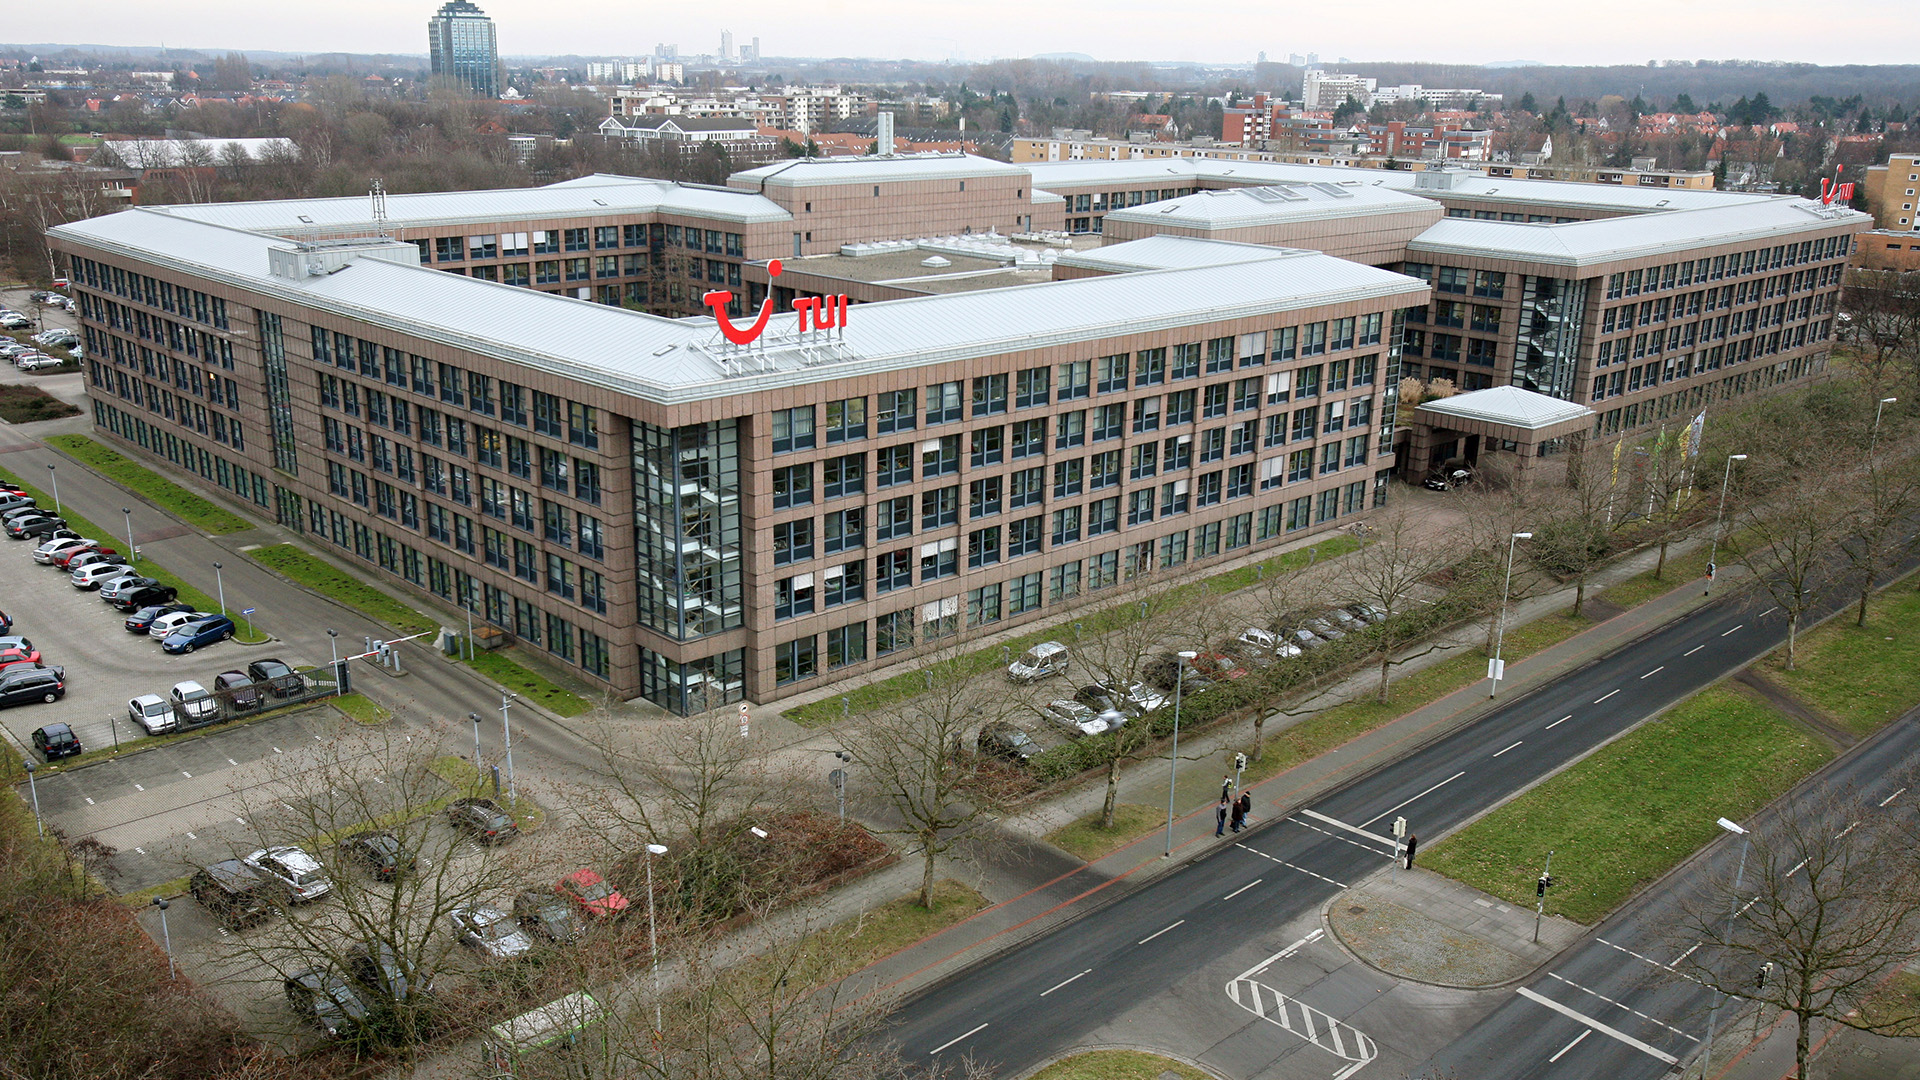 Das Gebäude der Tui Konzernzentrale in Hannover. | picture alliance / dpa